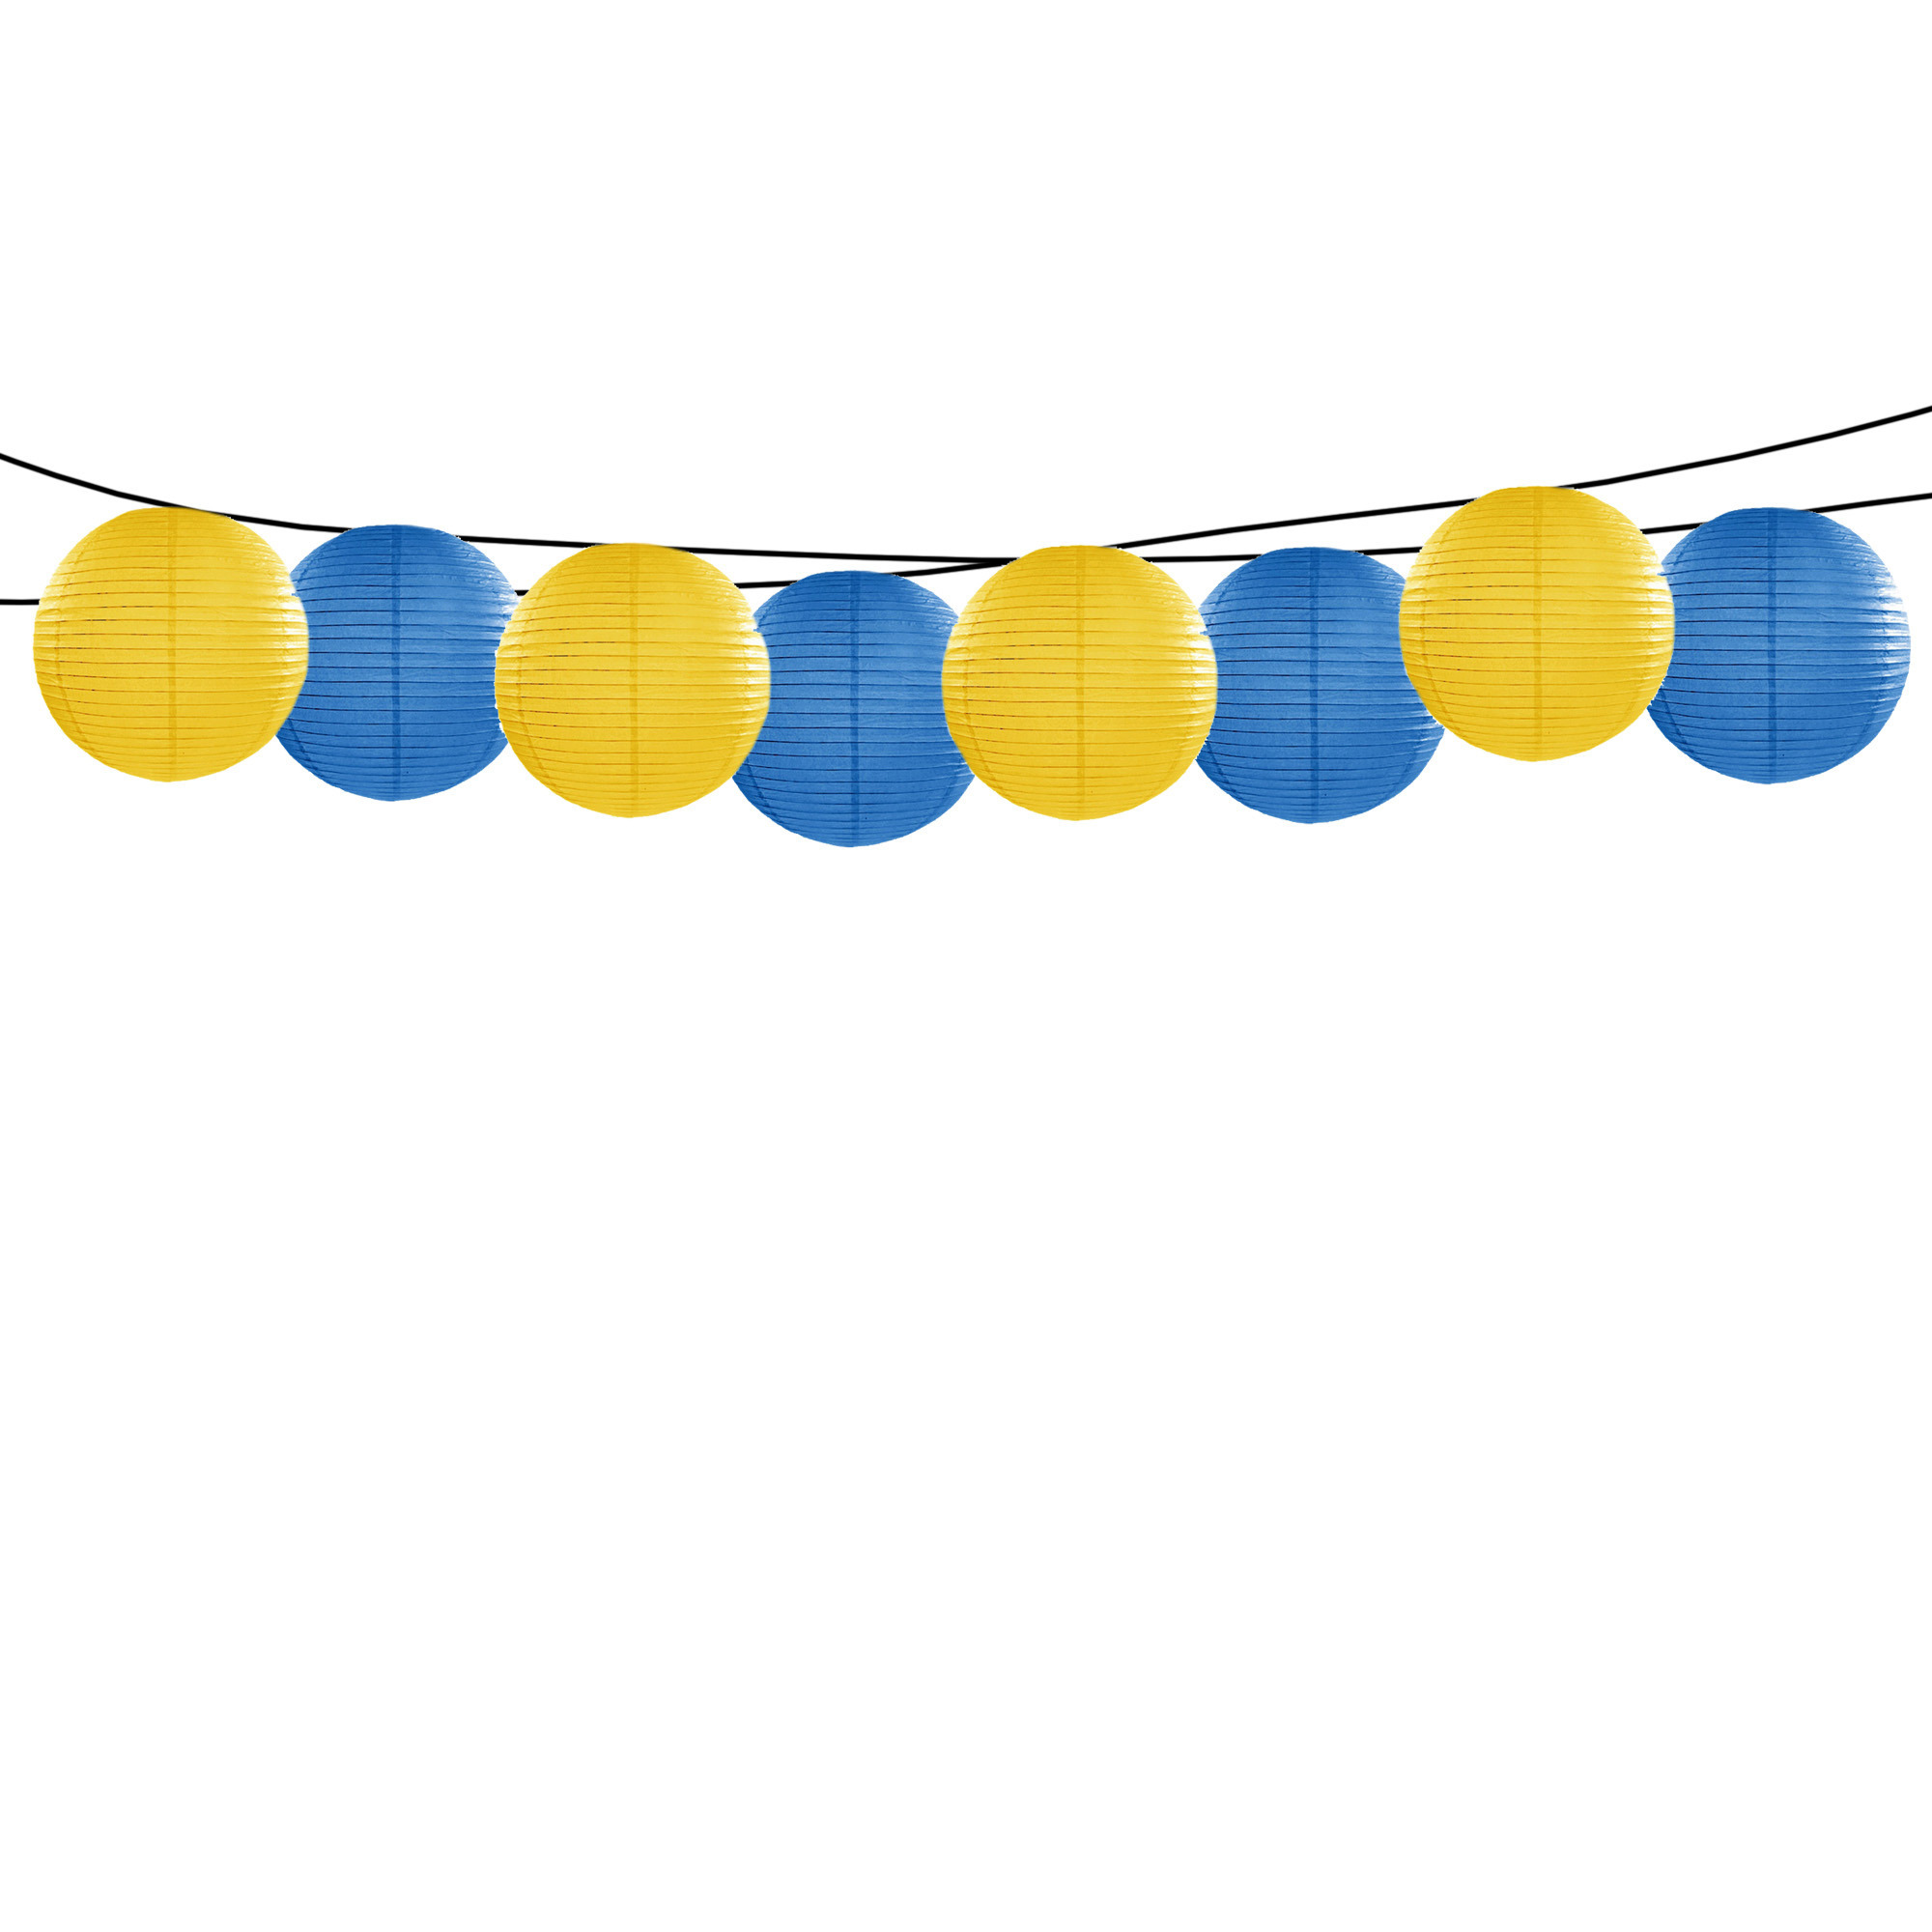 Feest-tuin versiering 8x stuks luxe bol-vorm lampionnen blauw en geel dia 35 cm